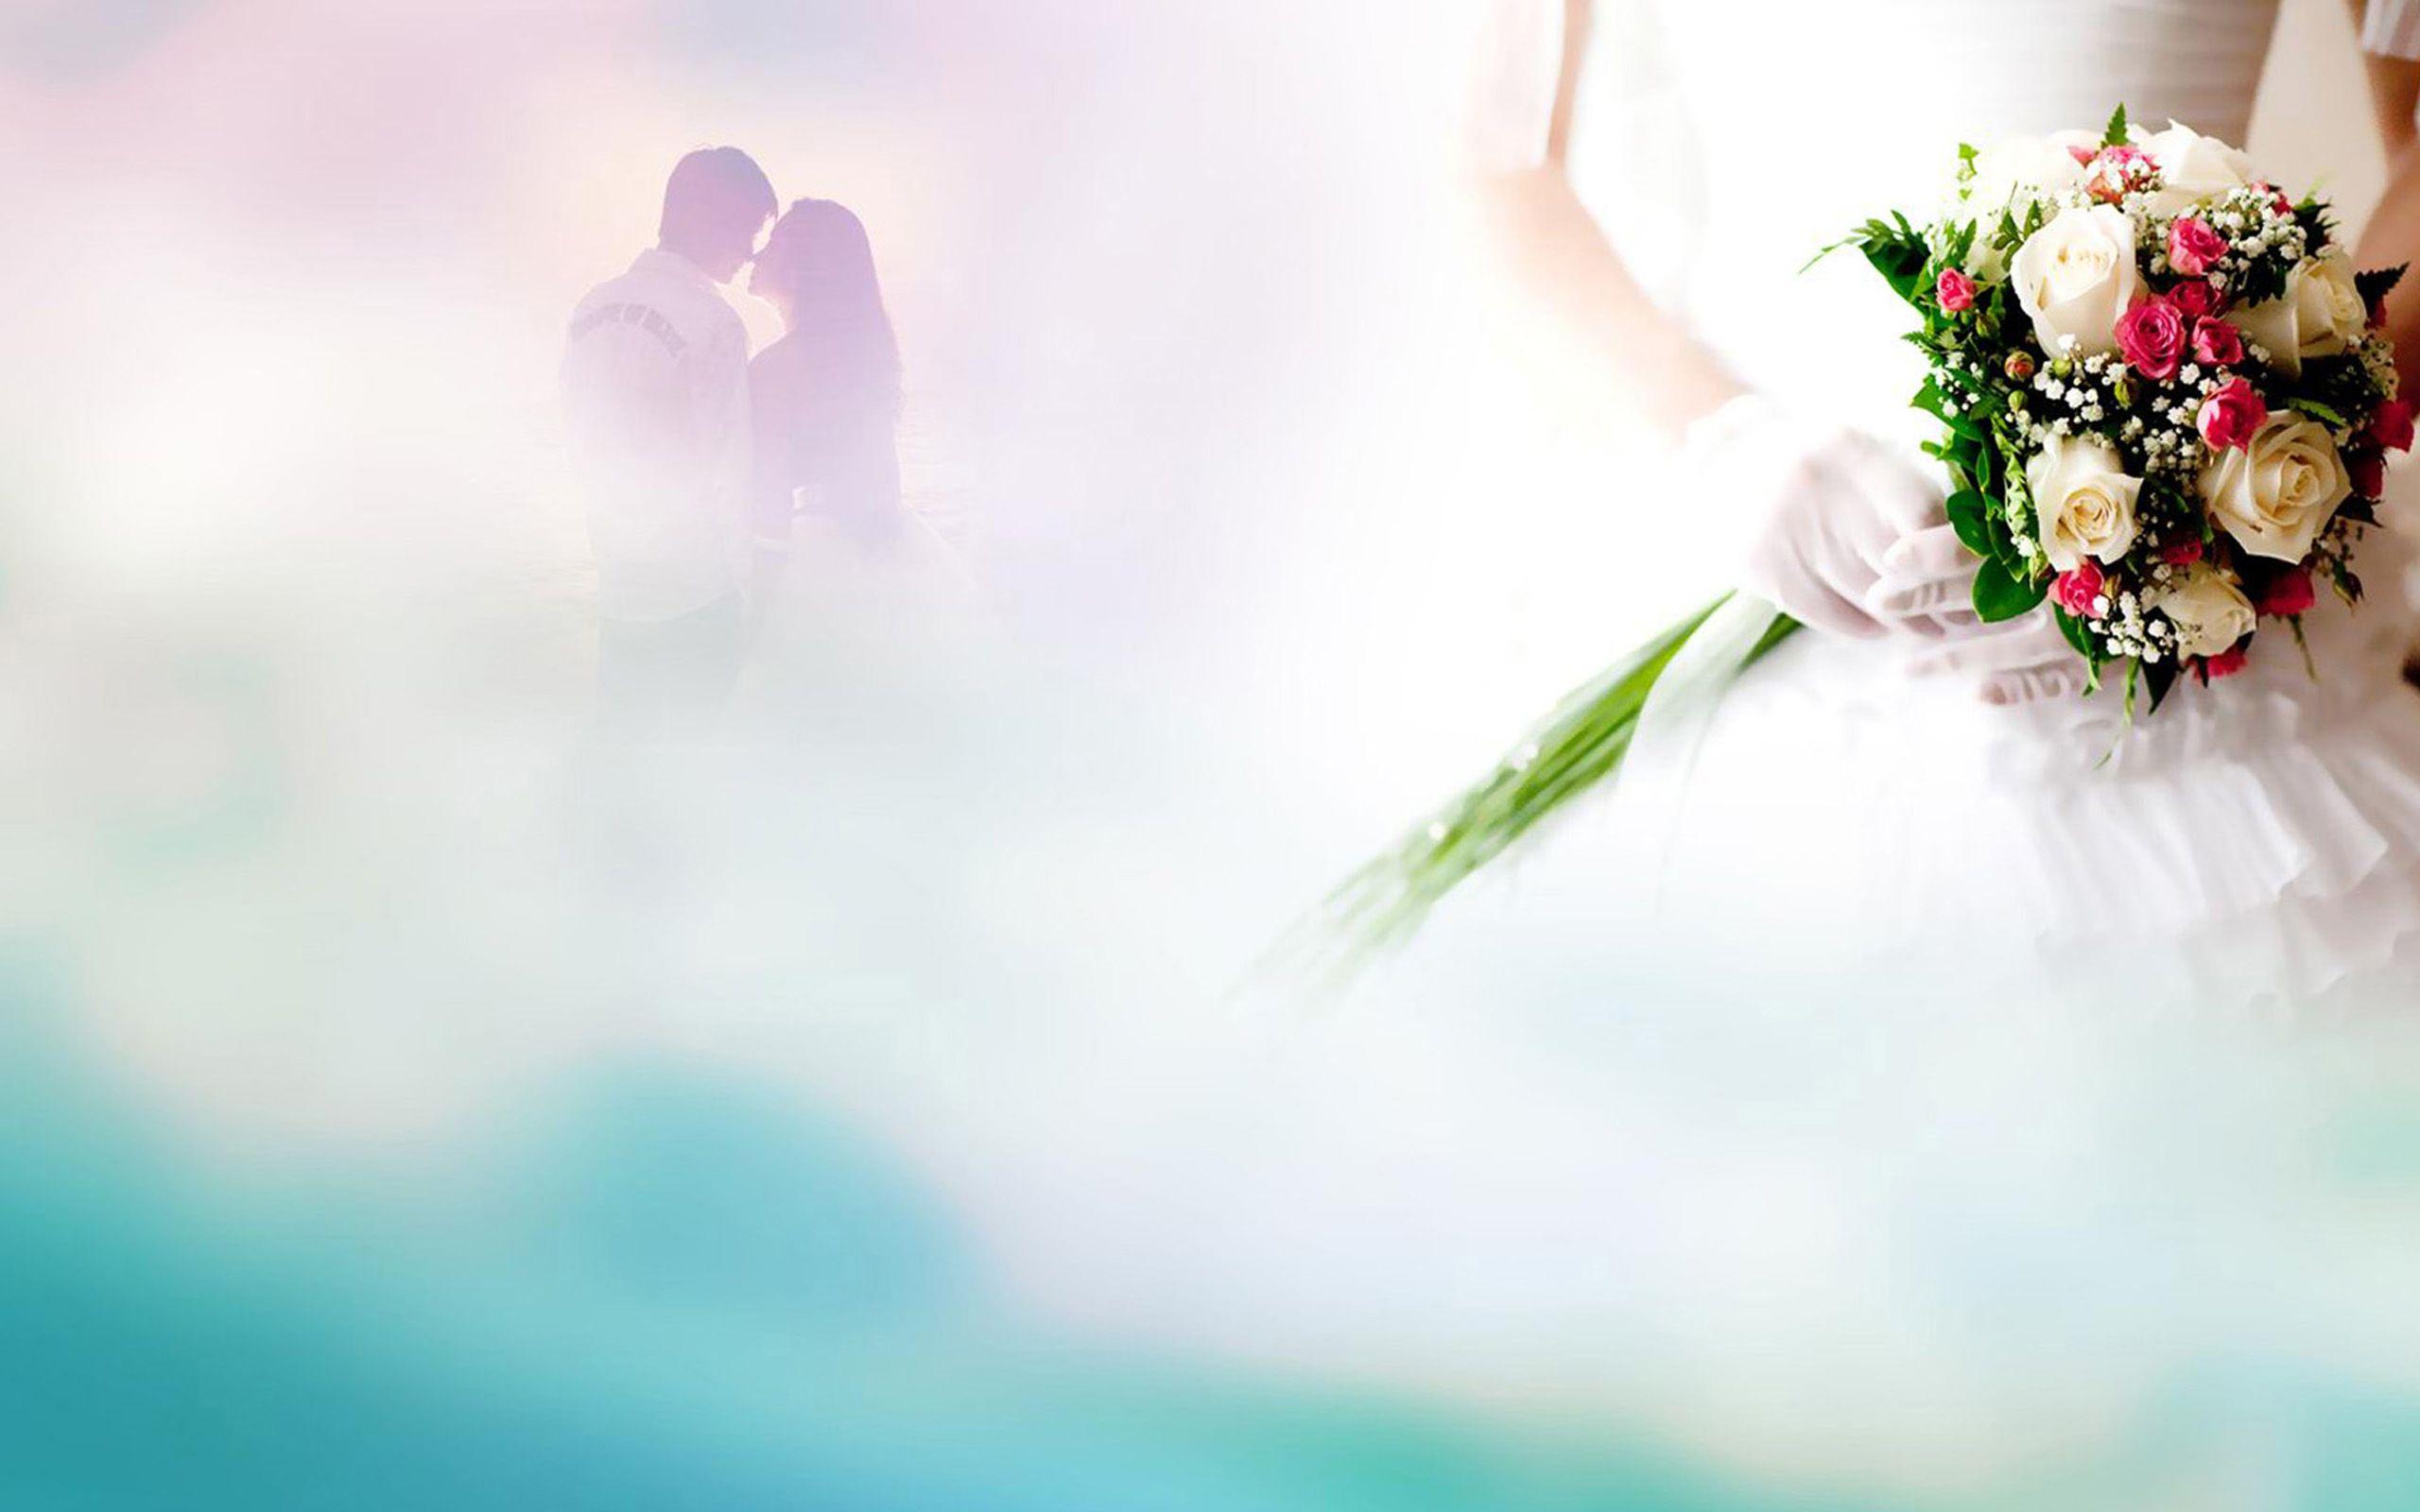 Wedding Desktop Wallpapers - Top Free Wedding Desktop Backgrounds